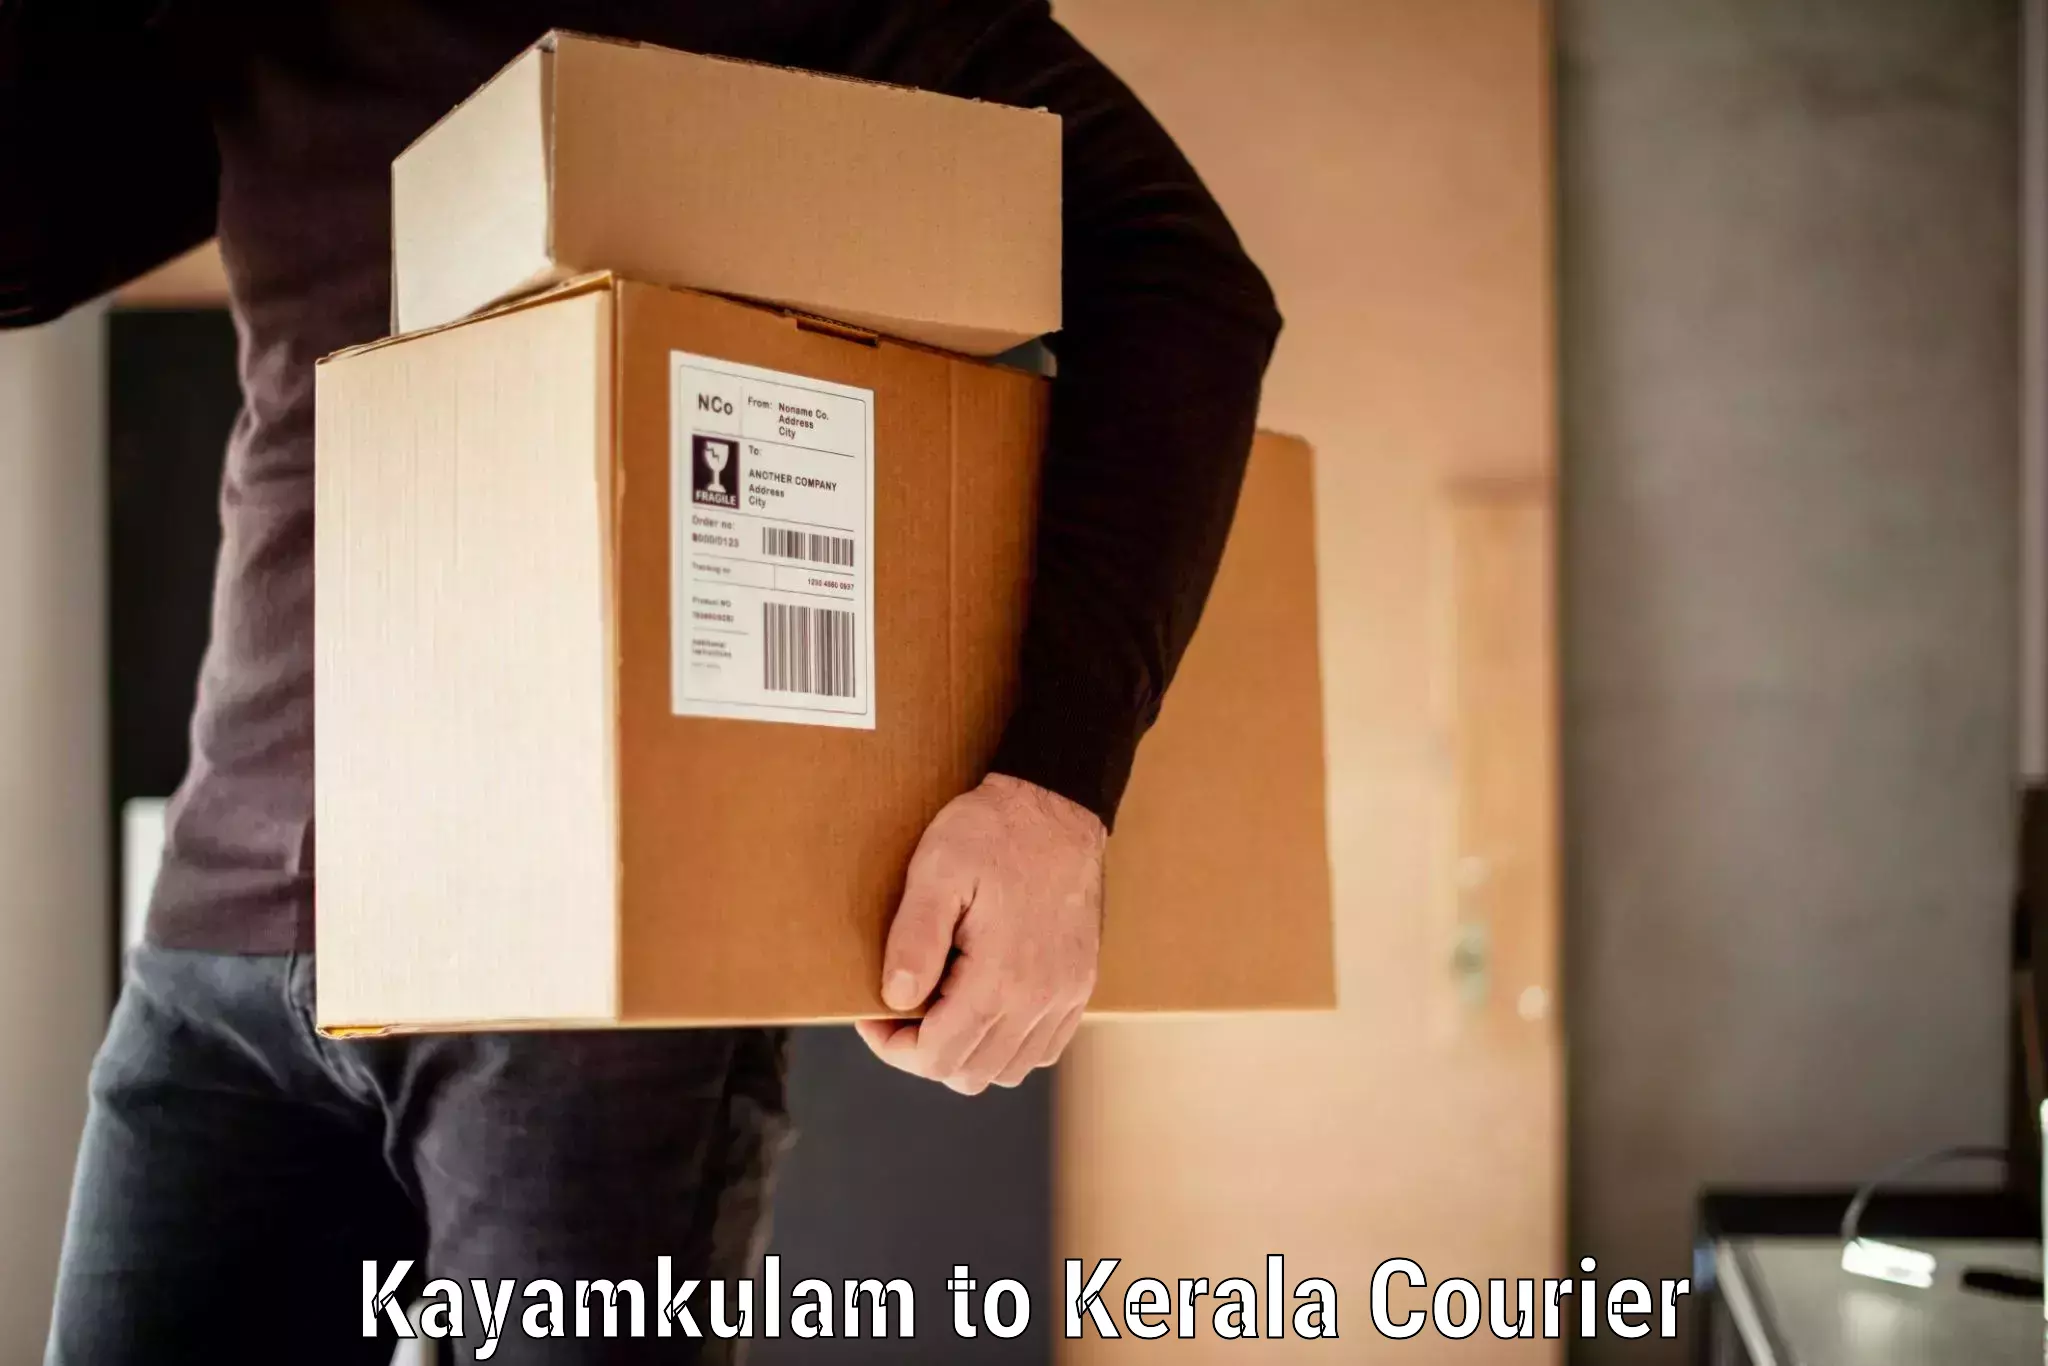 High-quality baggage shipment Kayamkulam to Kerala